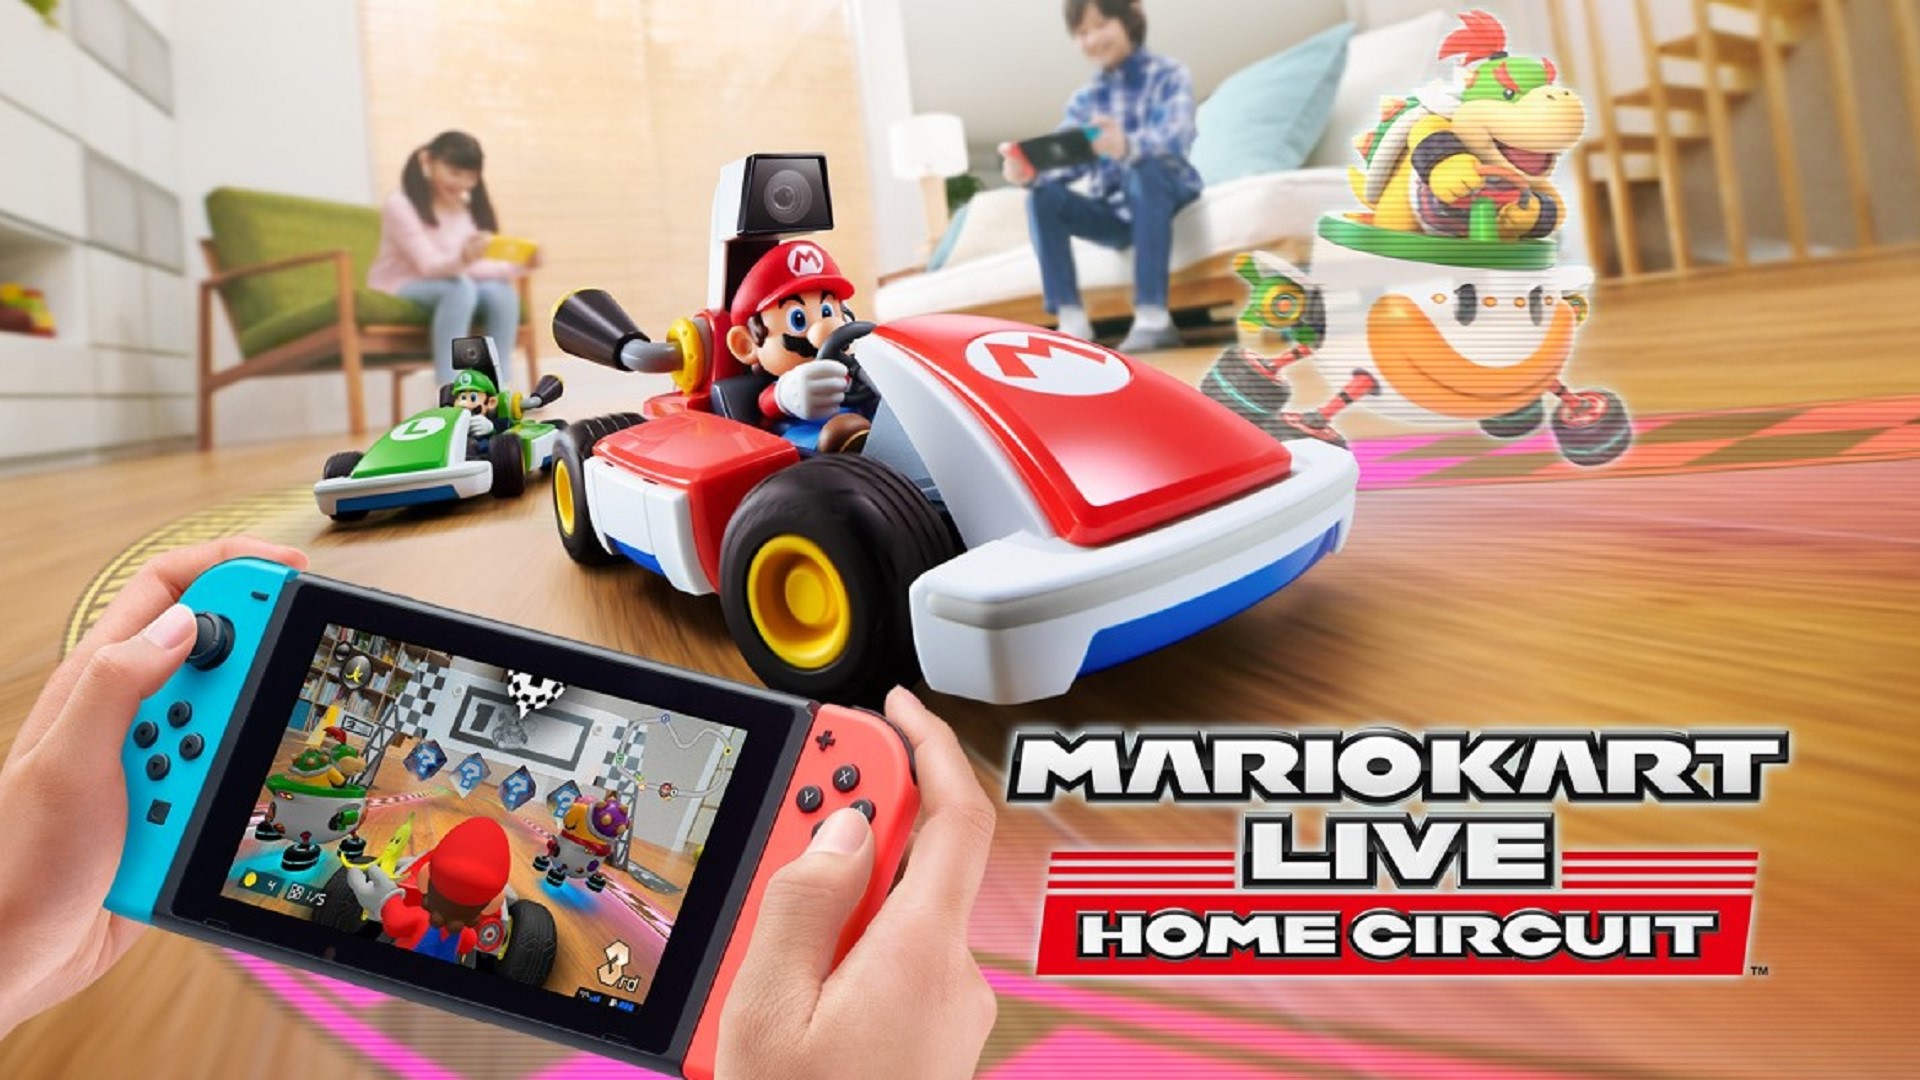 Mario Kart Live: S'anuncia el circuit domèstic, utilitza cotxes de Rc reals